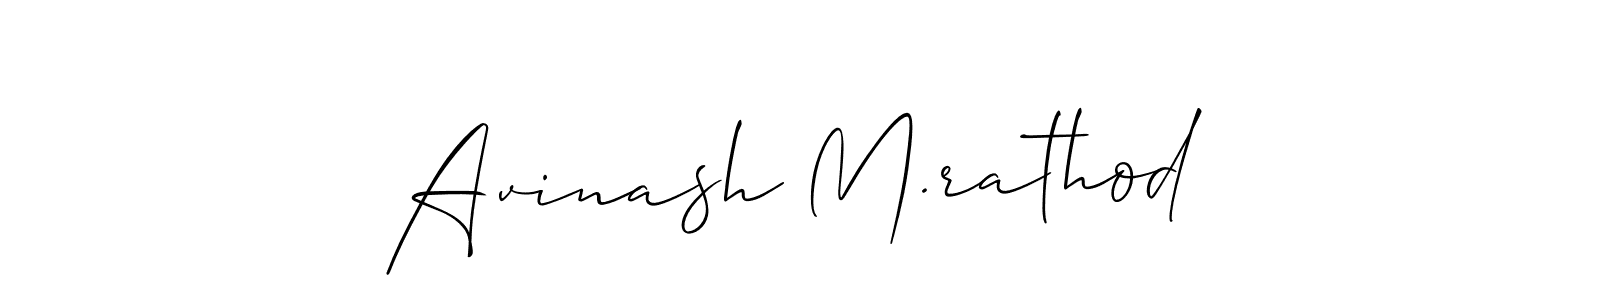 How to make Avinash M.rathod signature? Allison_Script is a professional autograph style. Create handwritten signature for Avinash M.rathod name. Avinash M.rathod signature style 2 images and pictures png